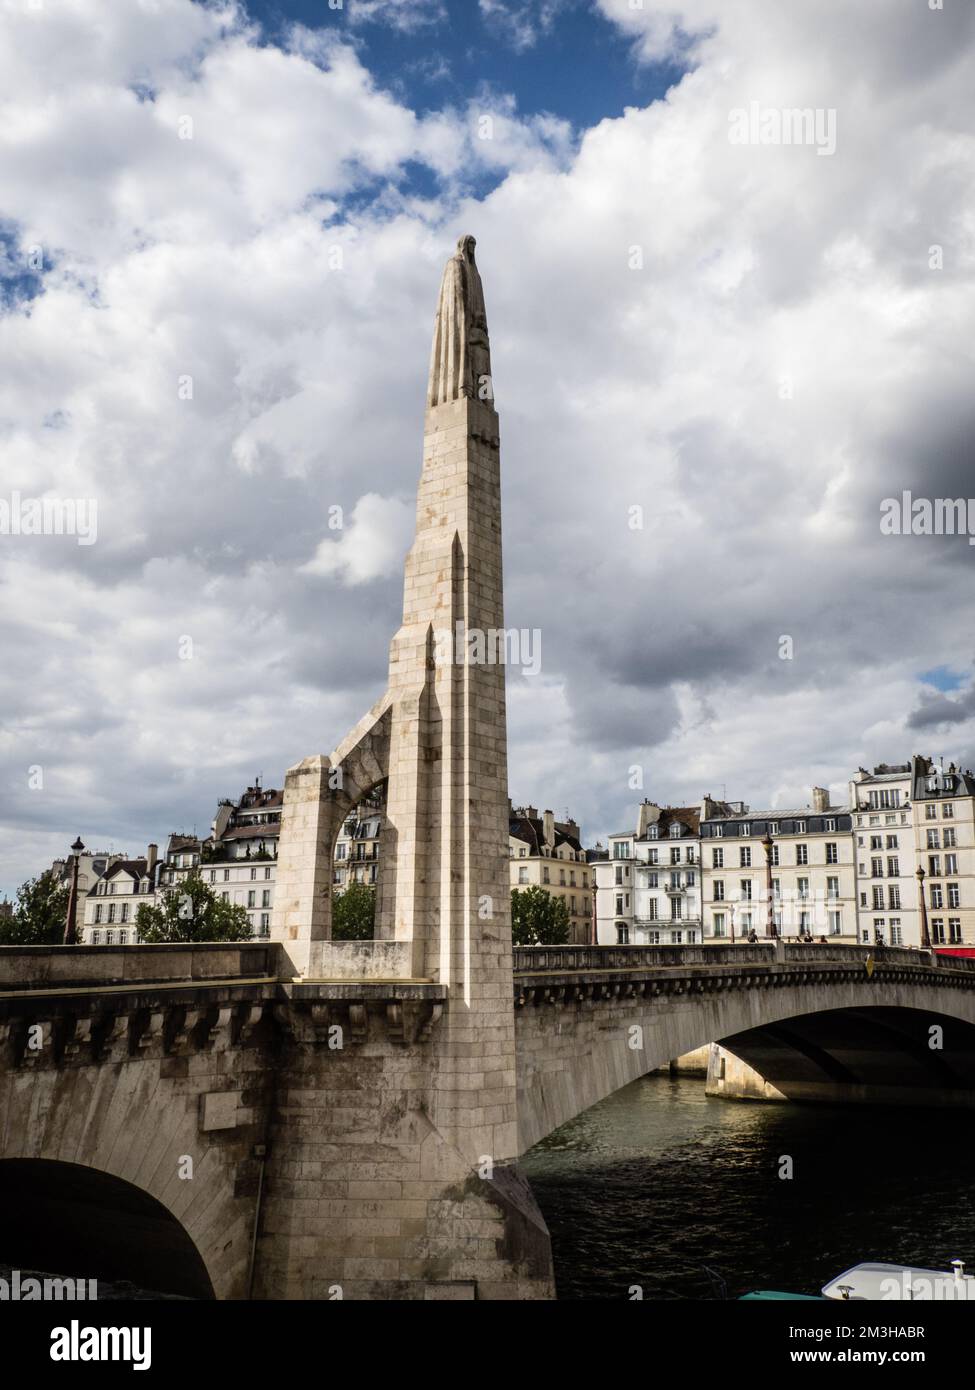 Statue of Saint Geneviève, Pont de la Tournelle, Paris, France Stock Photo